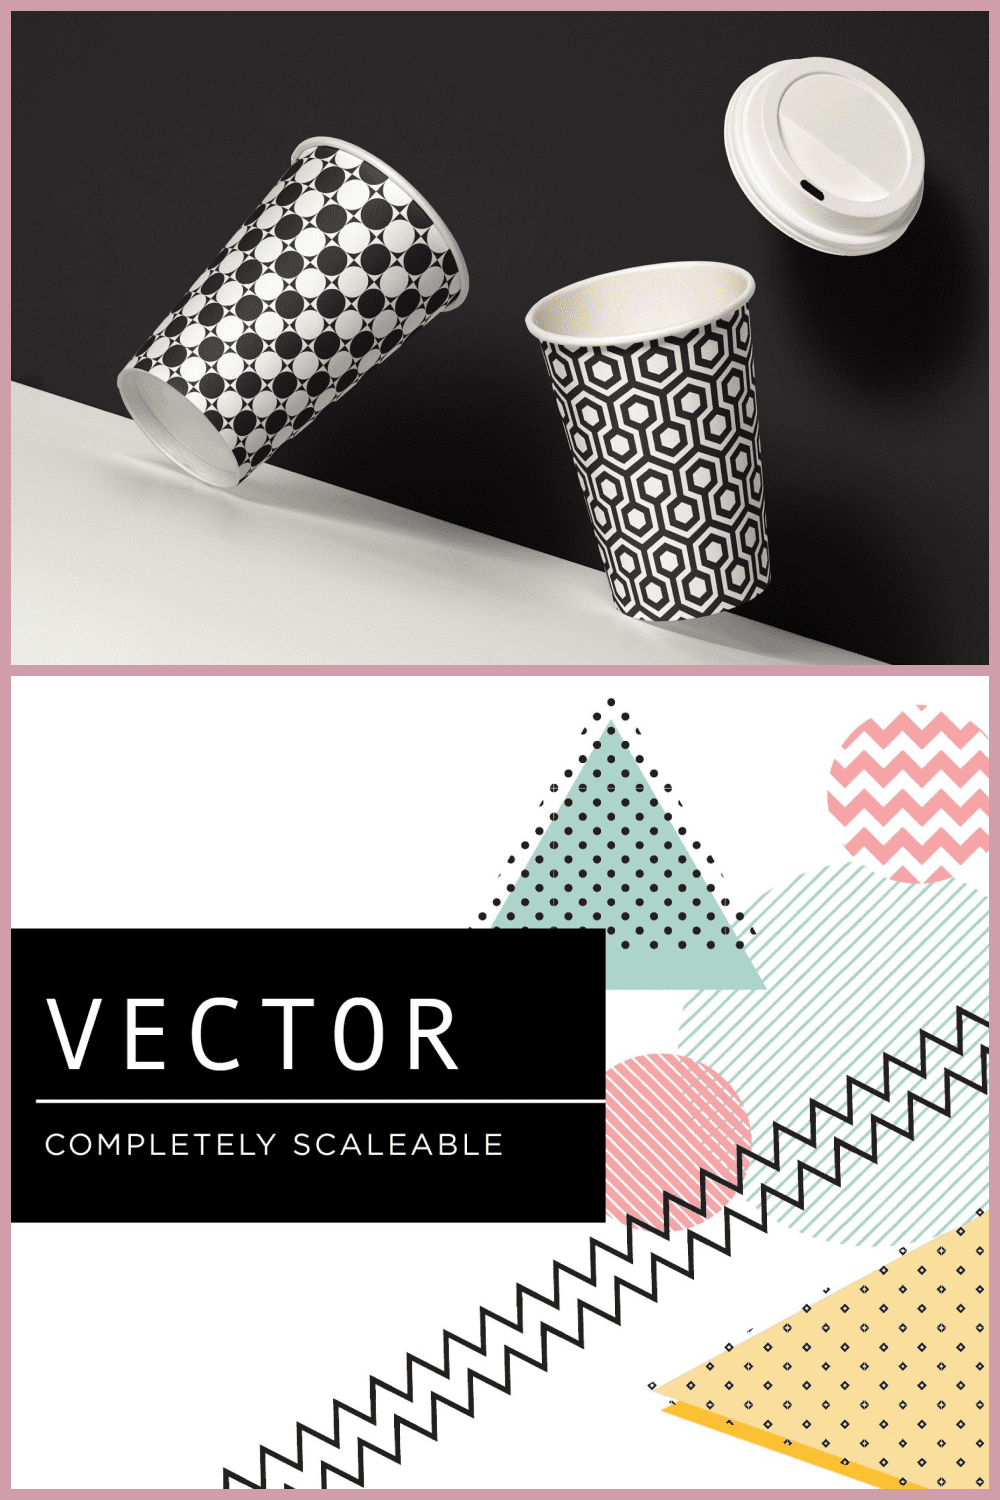 650 Essential Vector Geometric Patterns - Design Cuts